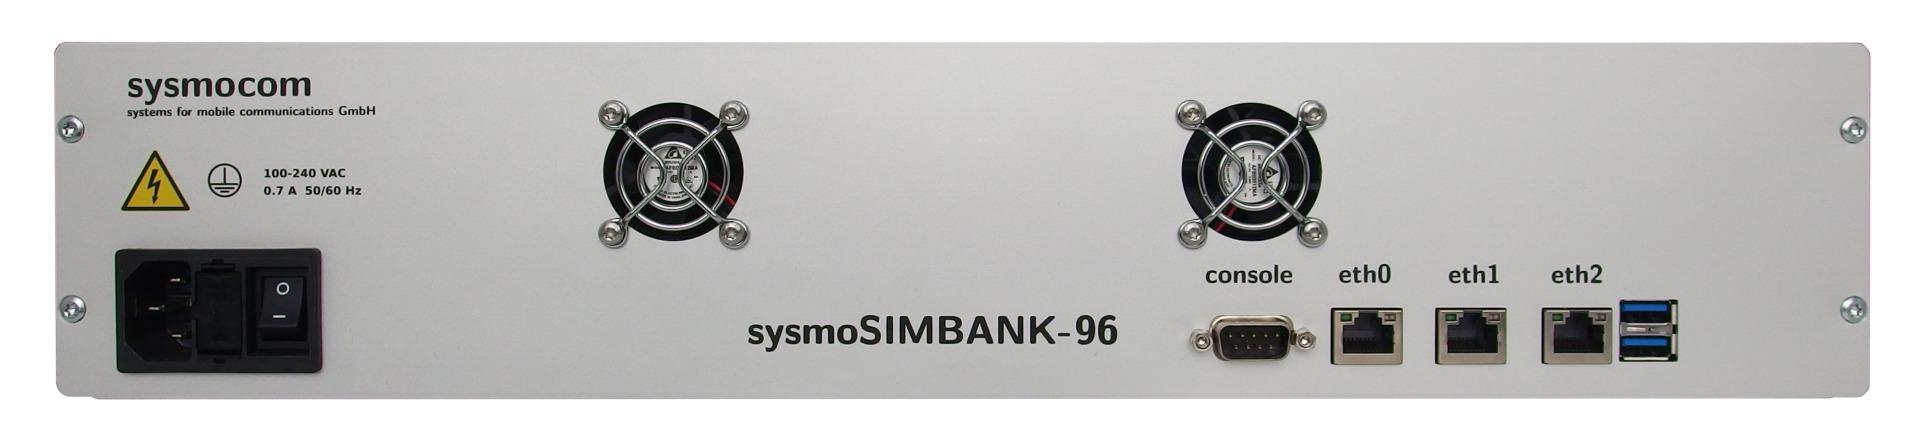 sysmoSIMBANK-96 top view